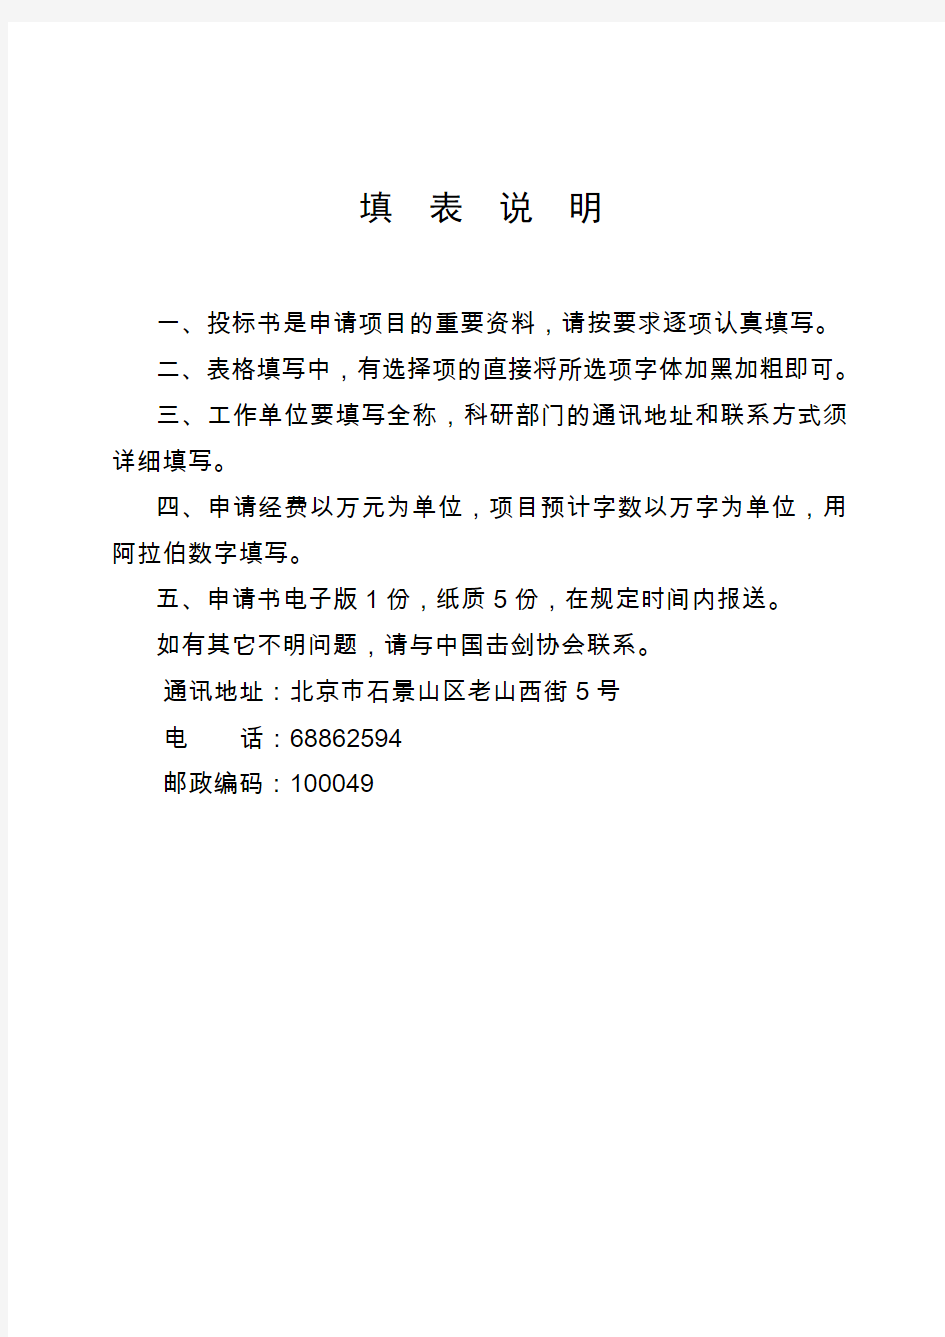 中国击剑协会科技服务项目投标书